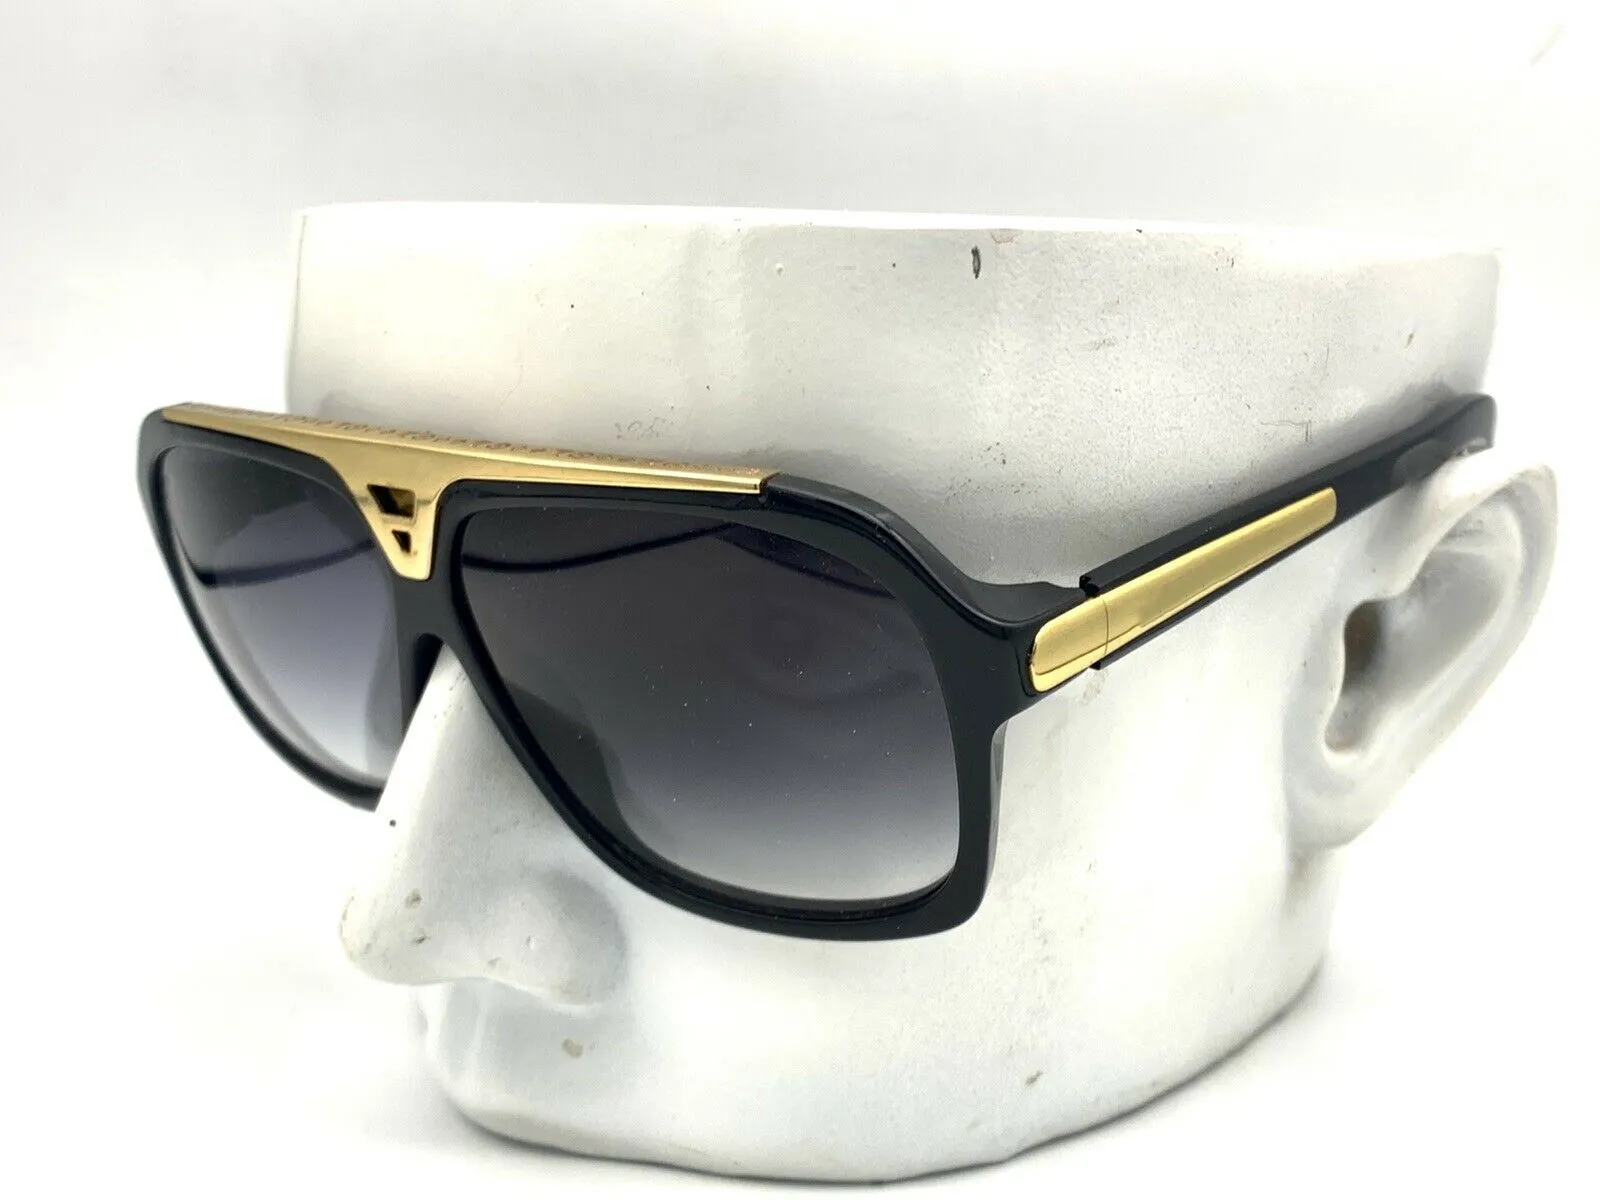 Mode-Sonnenbrillen, Acetat-Rahmen, Evidence Millionaire-Sonnenbrille, Designer-64-mm-Gläser für Herren und Damen, bessere schwarze Hüllen, 219 g